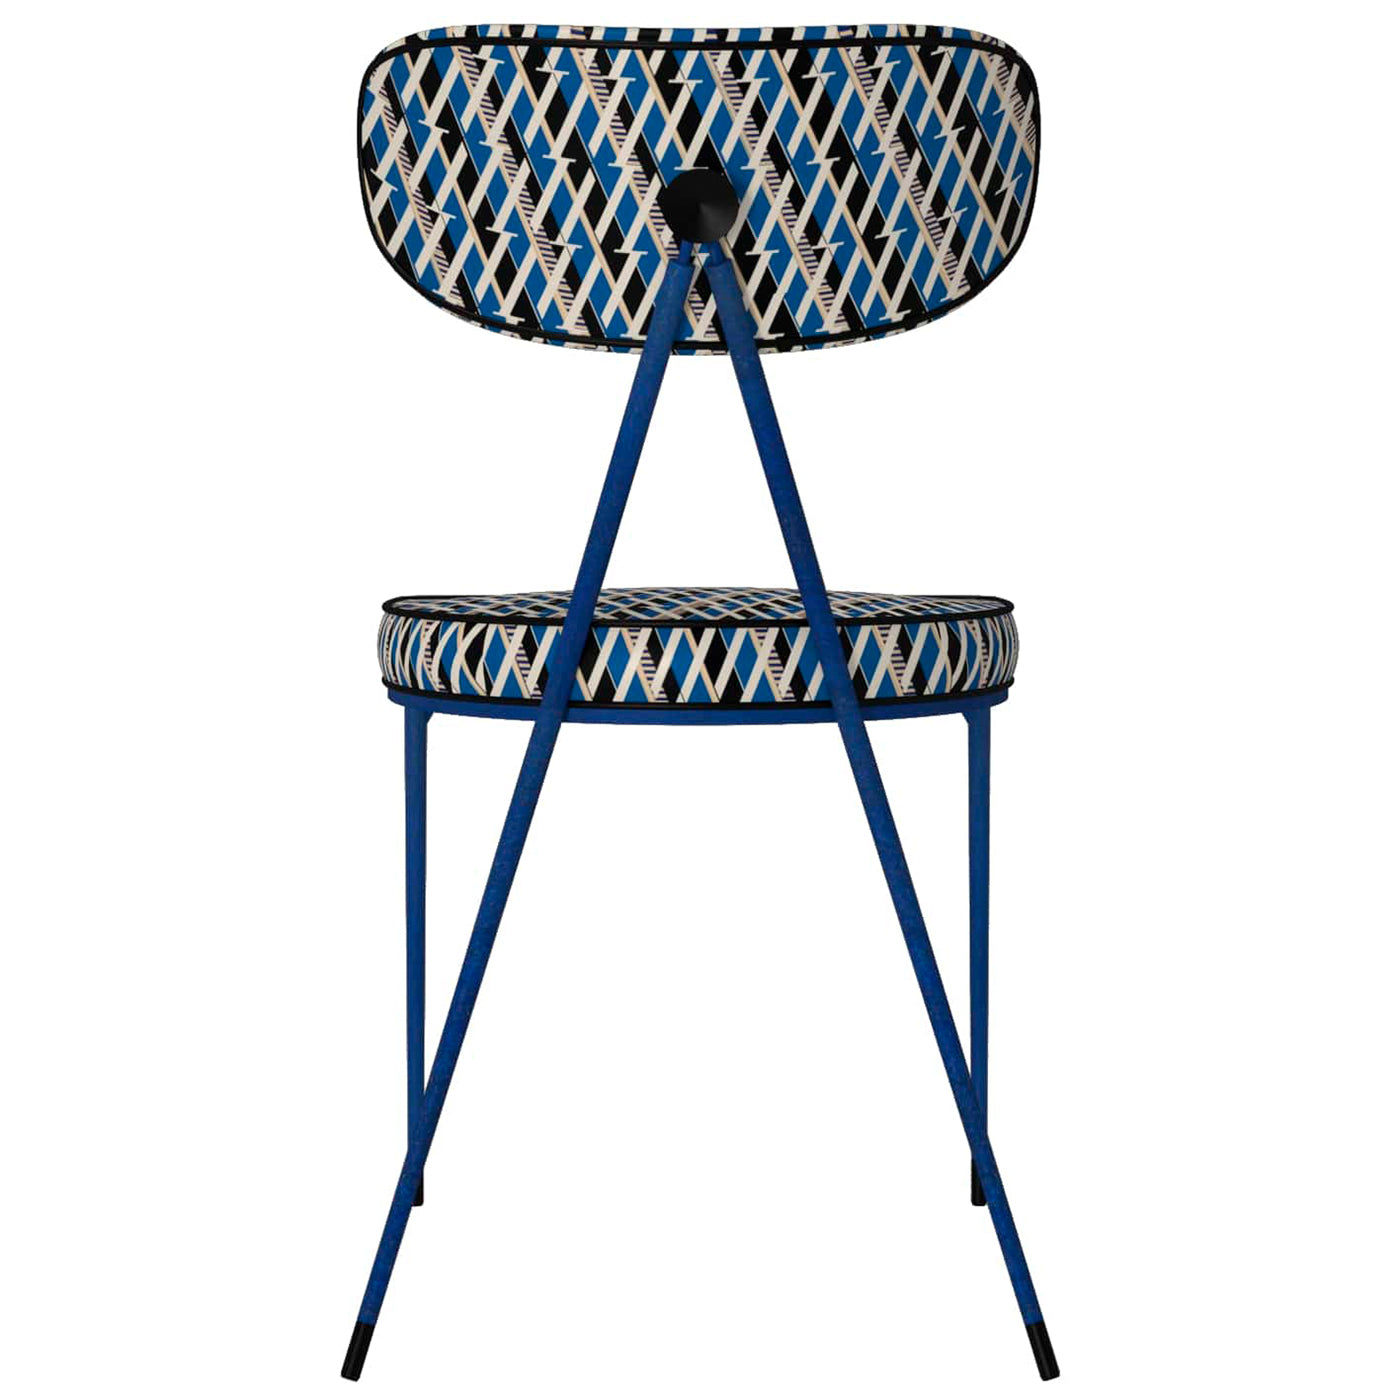 Kleins Blue Chair Objet - Alternative view 3